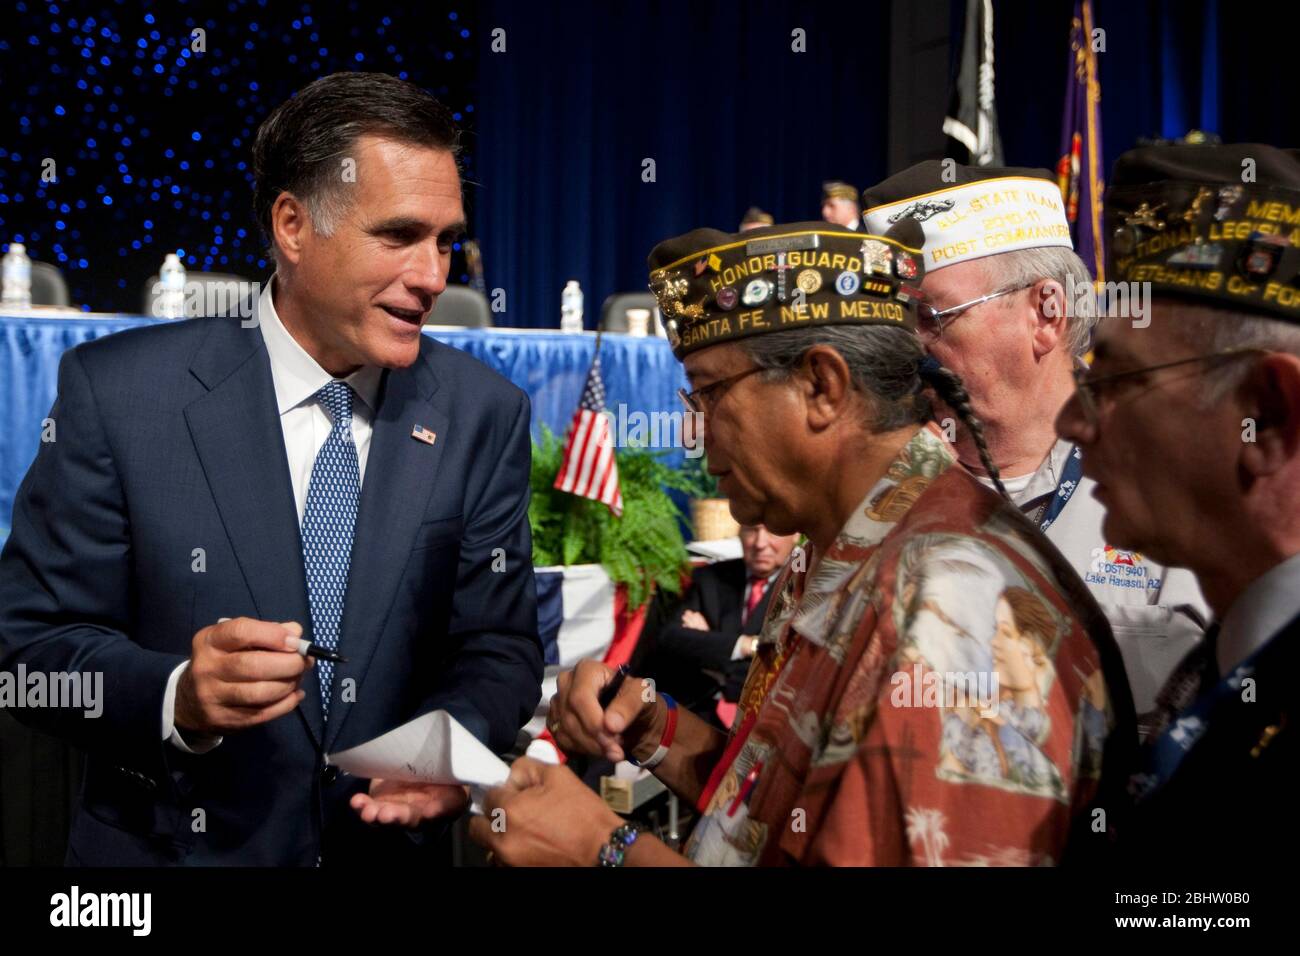 San Antonio Texas USA, San Antonio on 30 août 2011: Le candidat républicain à la présidence Mitt Romney fait une incursion dans l'état d'origine de l'adversaire Rick Perry avec une apparition à la convention annuelle des vétérans des guerres étrangères (VFW). ©Marjorie Kamys Cotera/Daemmrich Photographie Banque D'Images